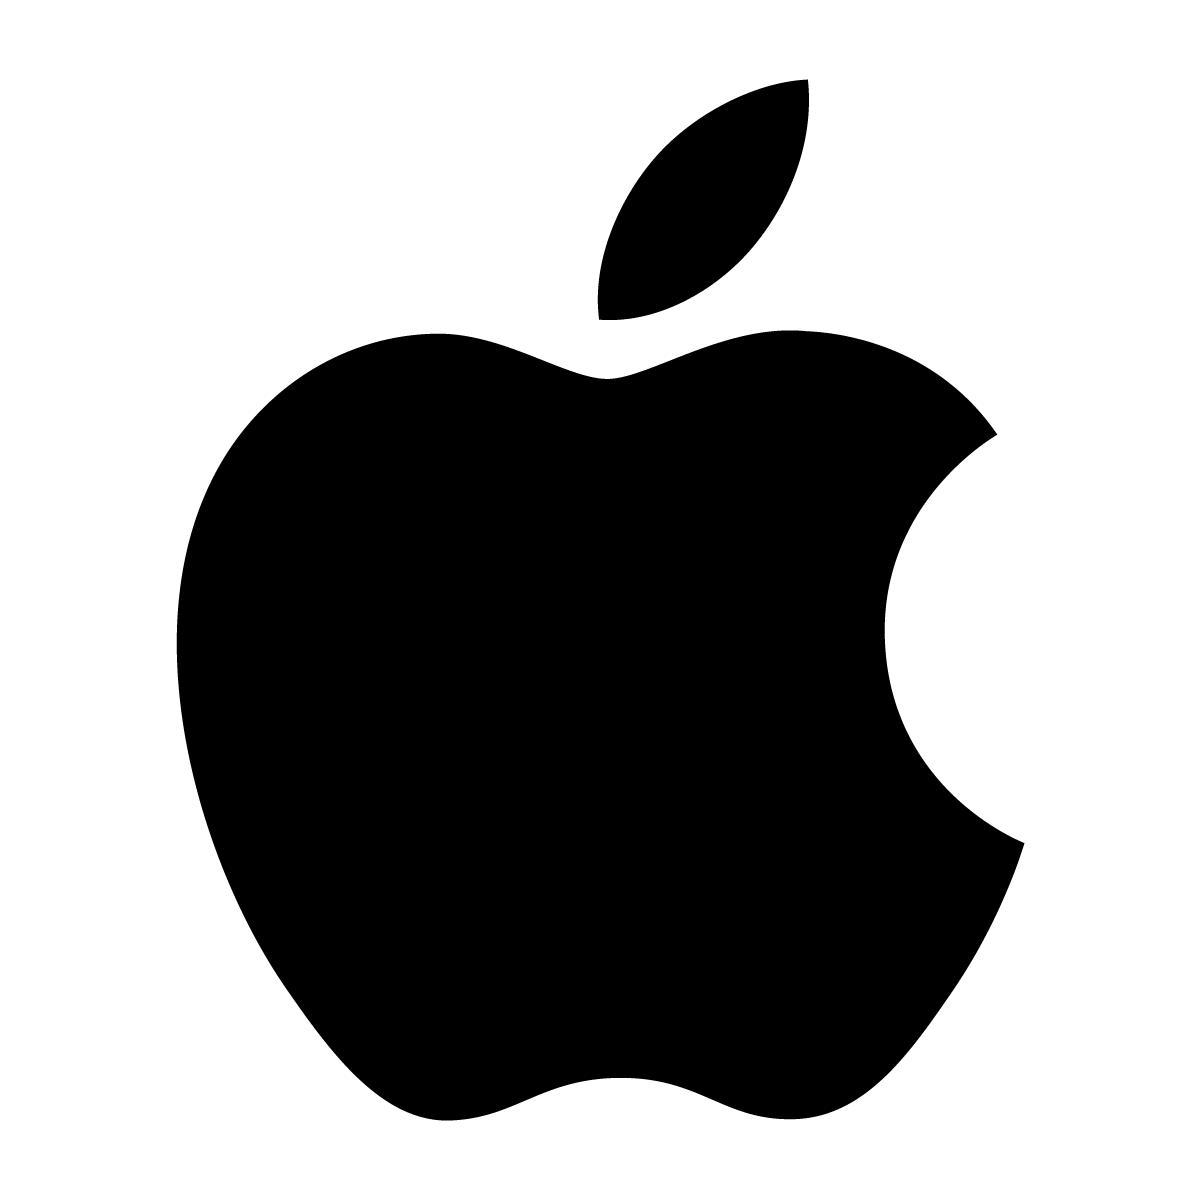 苹果新款MacBook Pro 13寸和15寸怎么选？ - 知乎